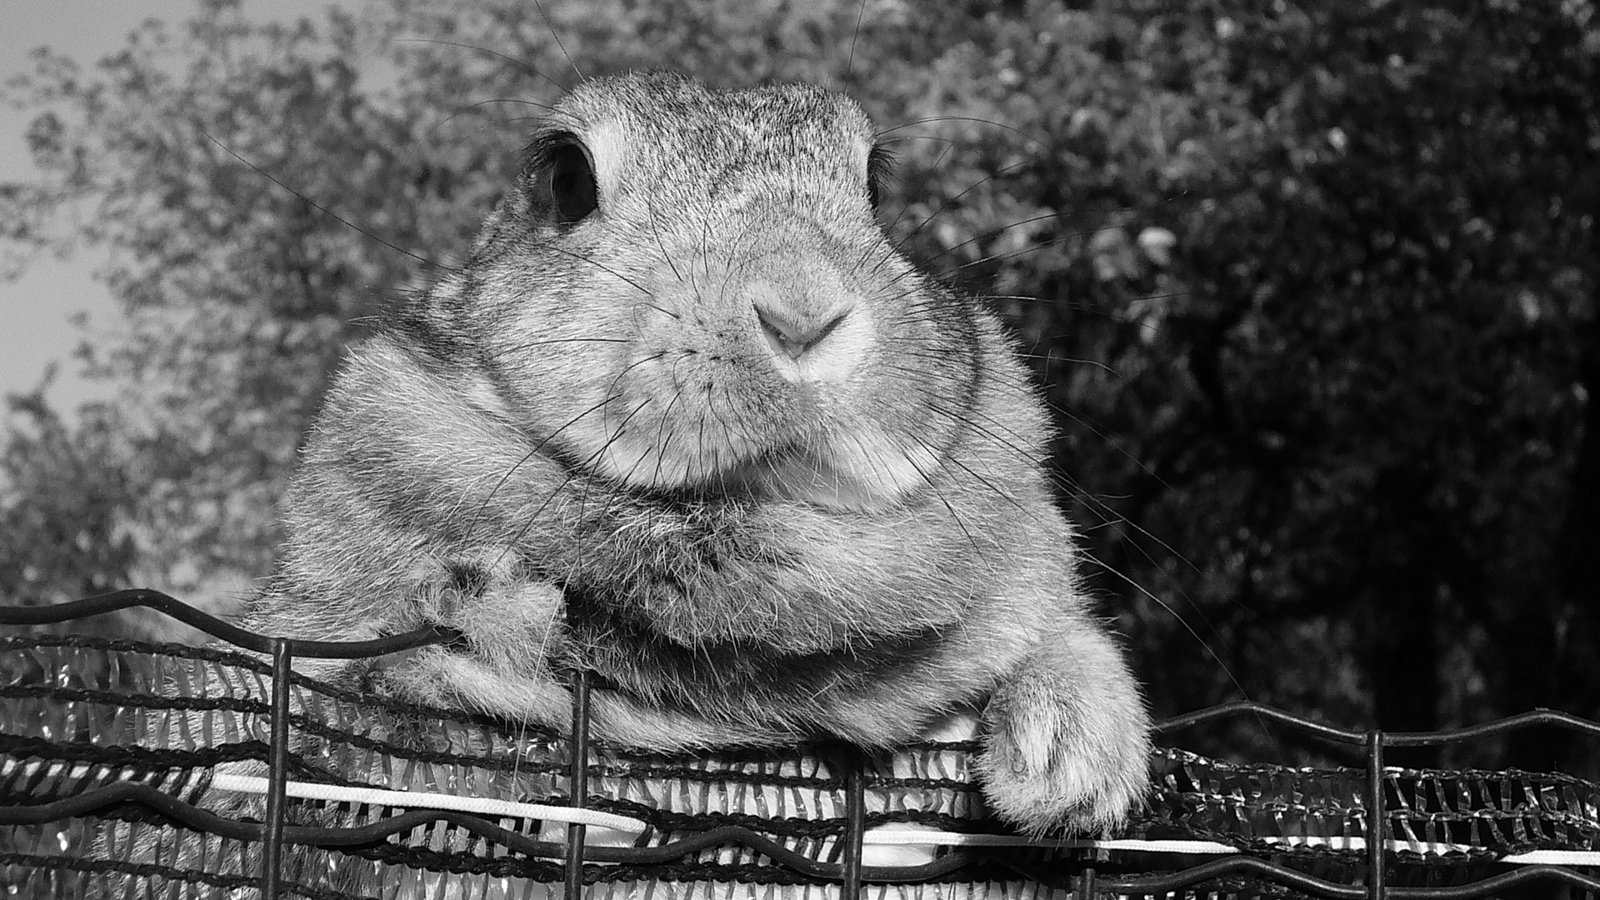 Black & white rabbit